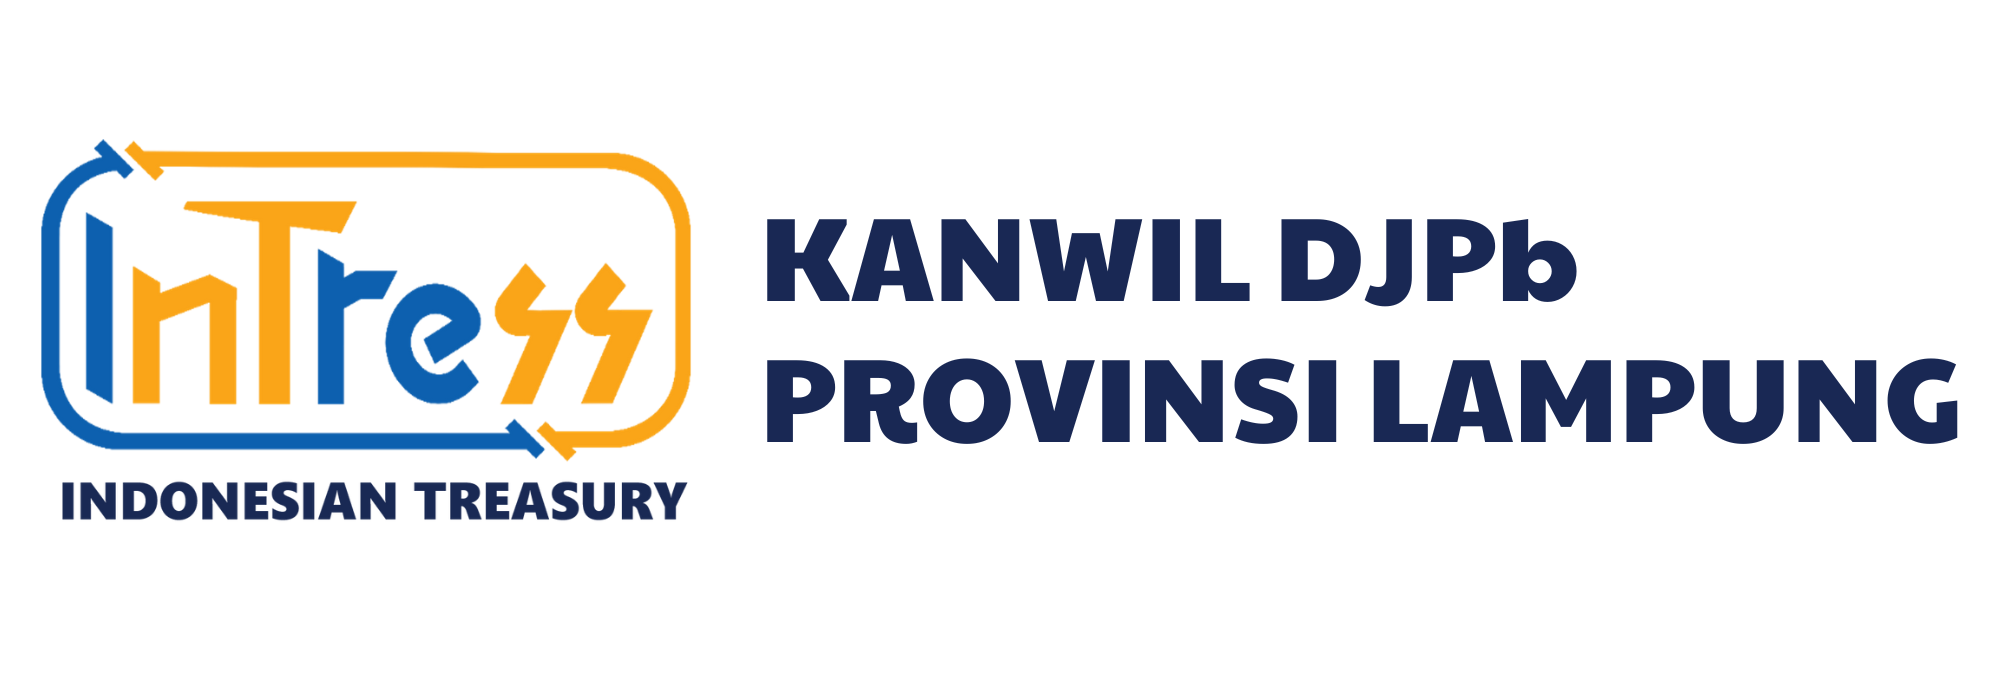 Kanwil Lampung | DJPb Kemenkeu RI